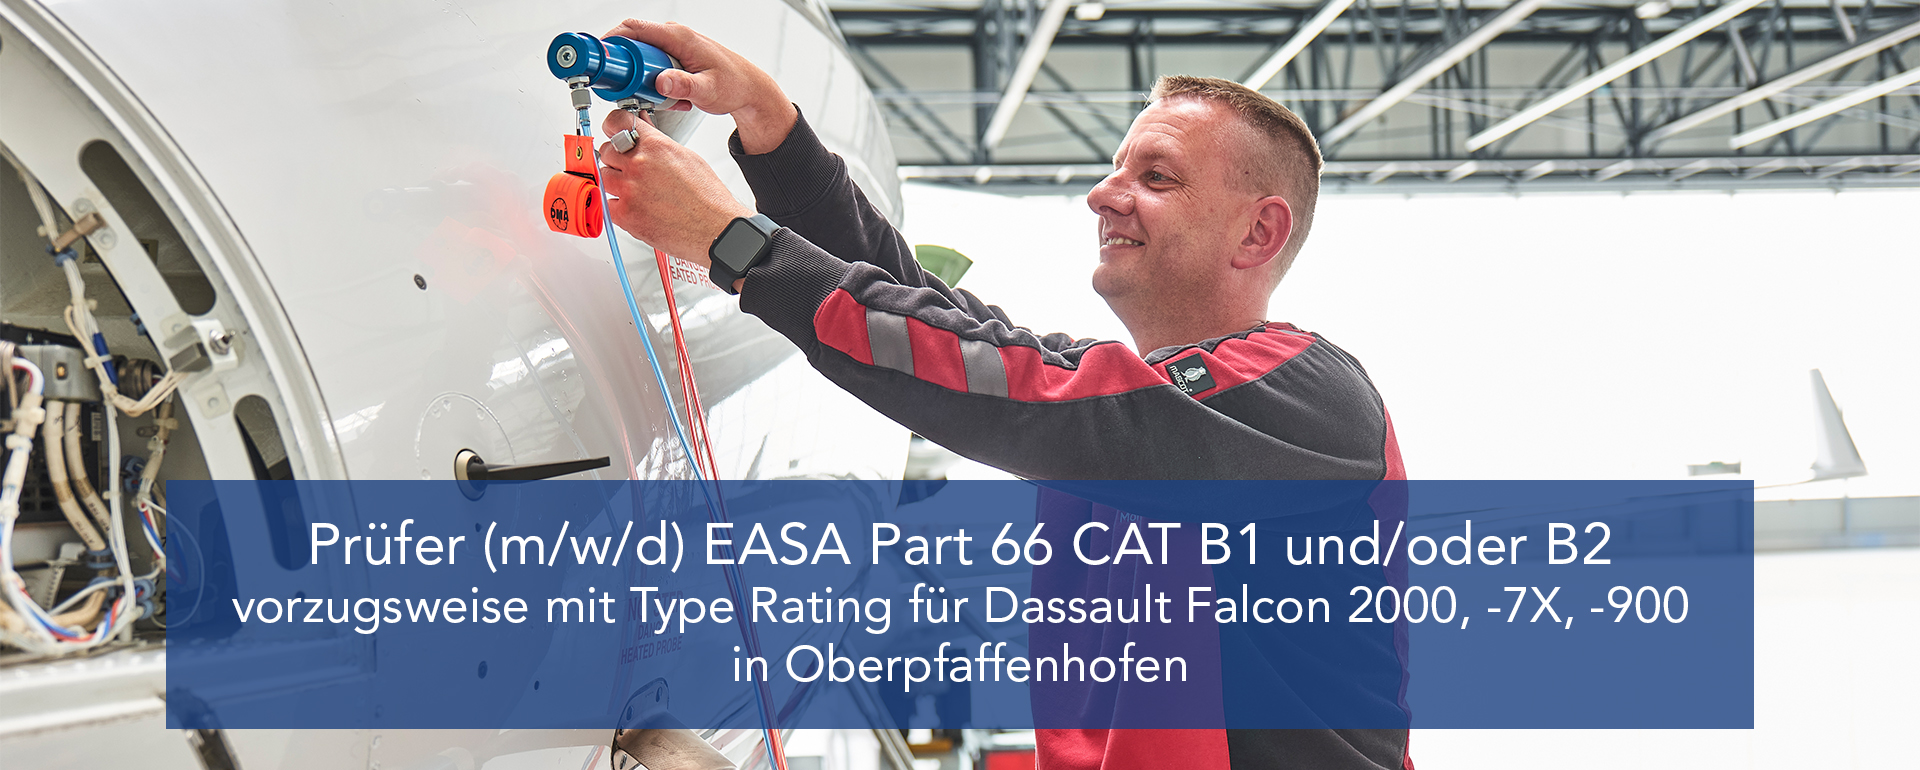 Prüfer (m/w/d) EASA Part 66 CAT B1 und/oder B2 vorzugsweise mit Type Rating für Dassault Falcon -2000, -7X, -900